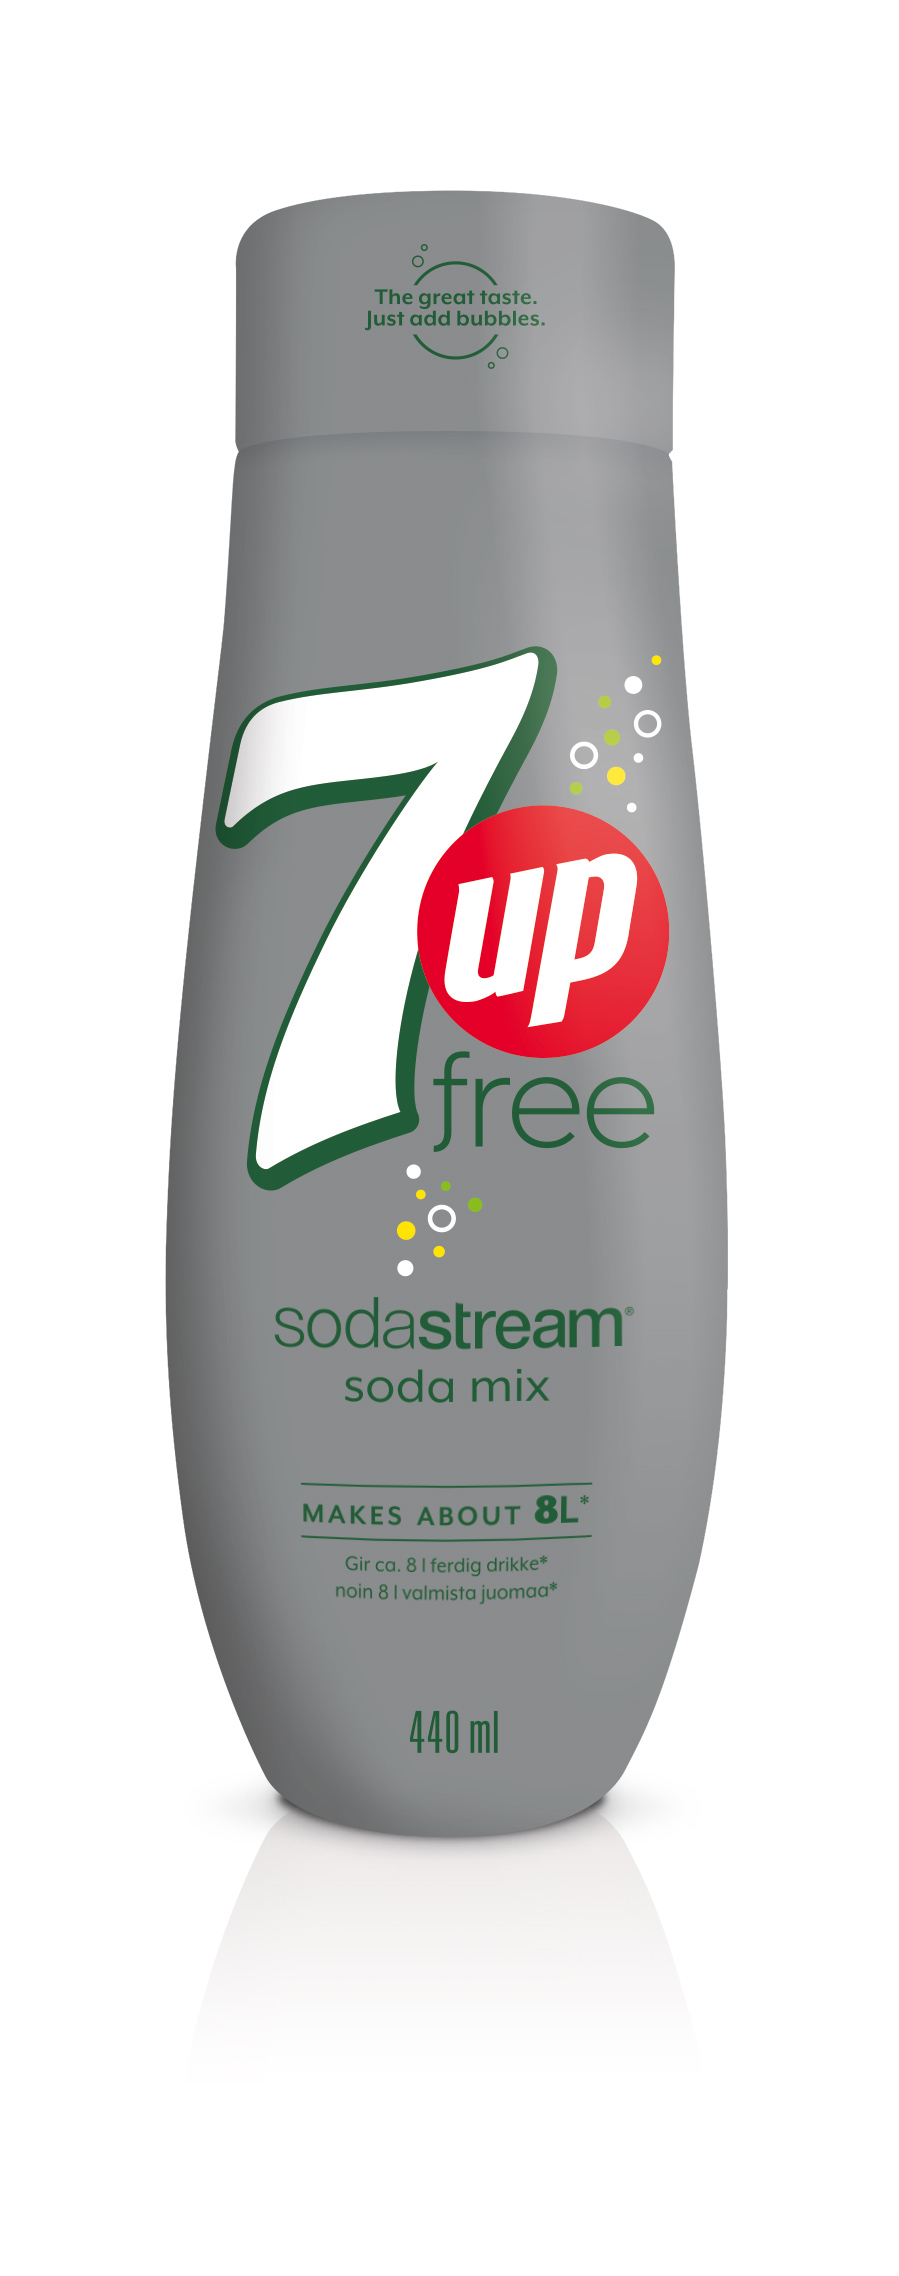 SodaStream 7UP Free essens